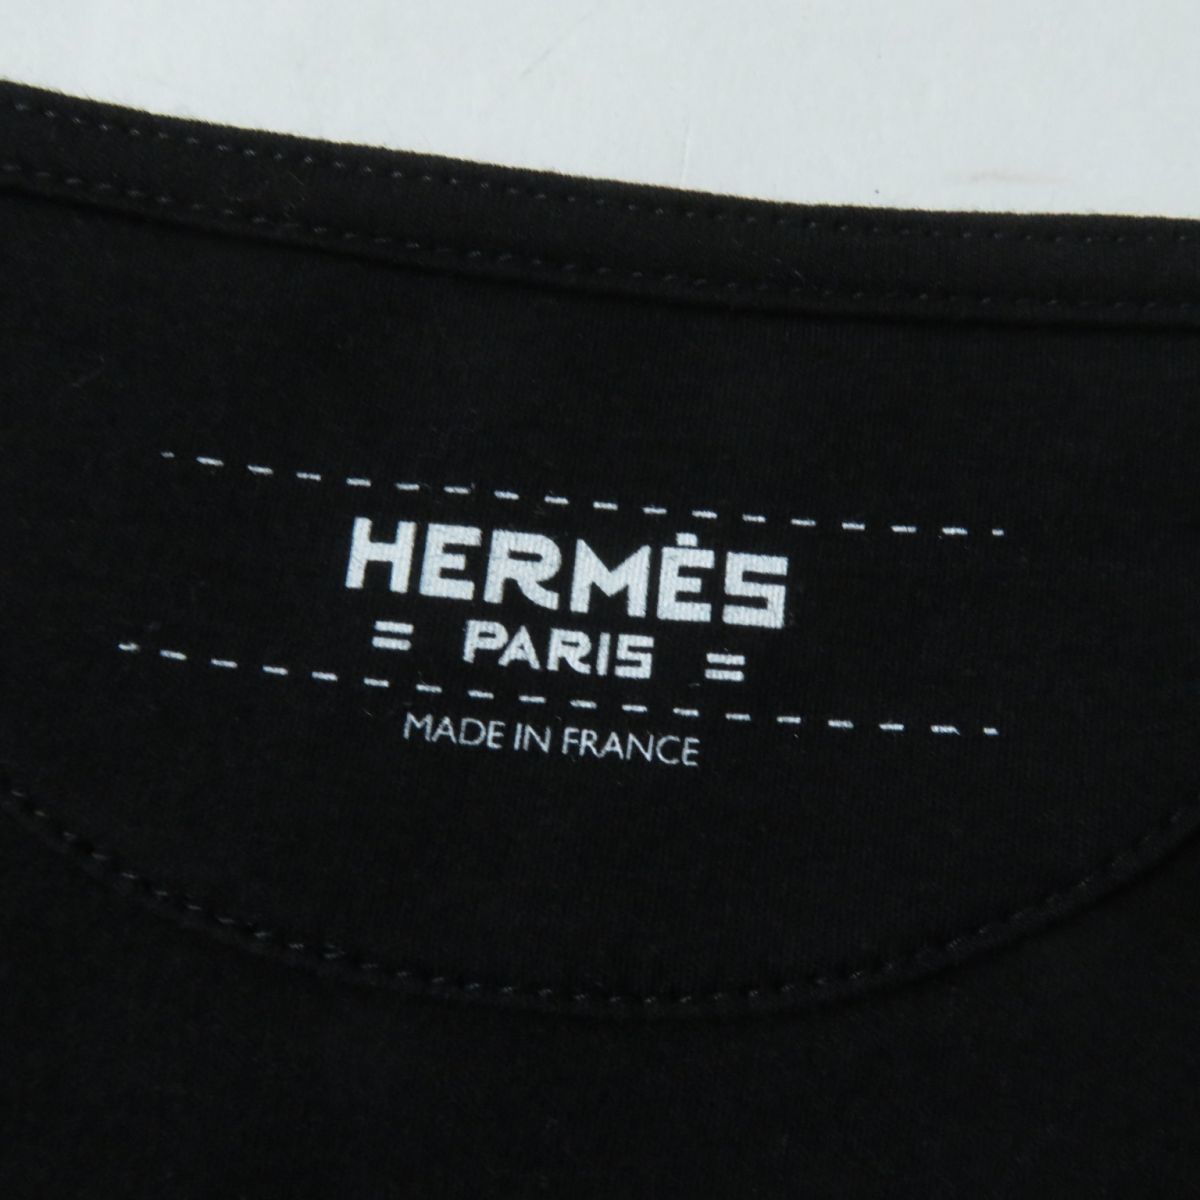  не использовался товар * стандартный товар HERMES Hermes 19 год вырез лодочкой с карманом колени длина короткий рукав One-piece женский черный чёрный 34 Франция производства с биркой 